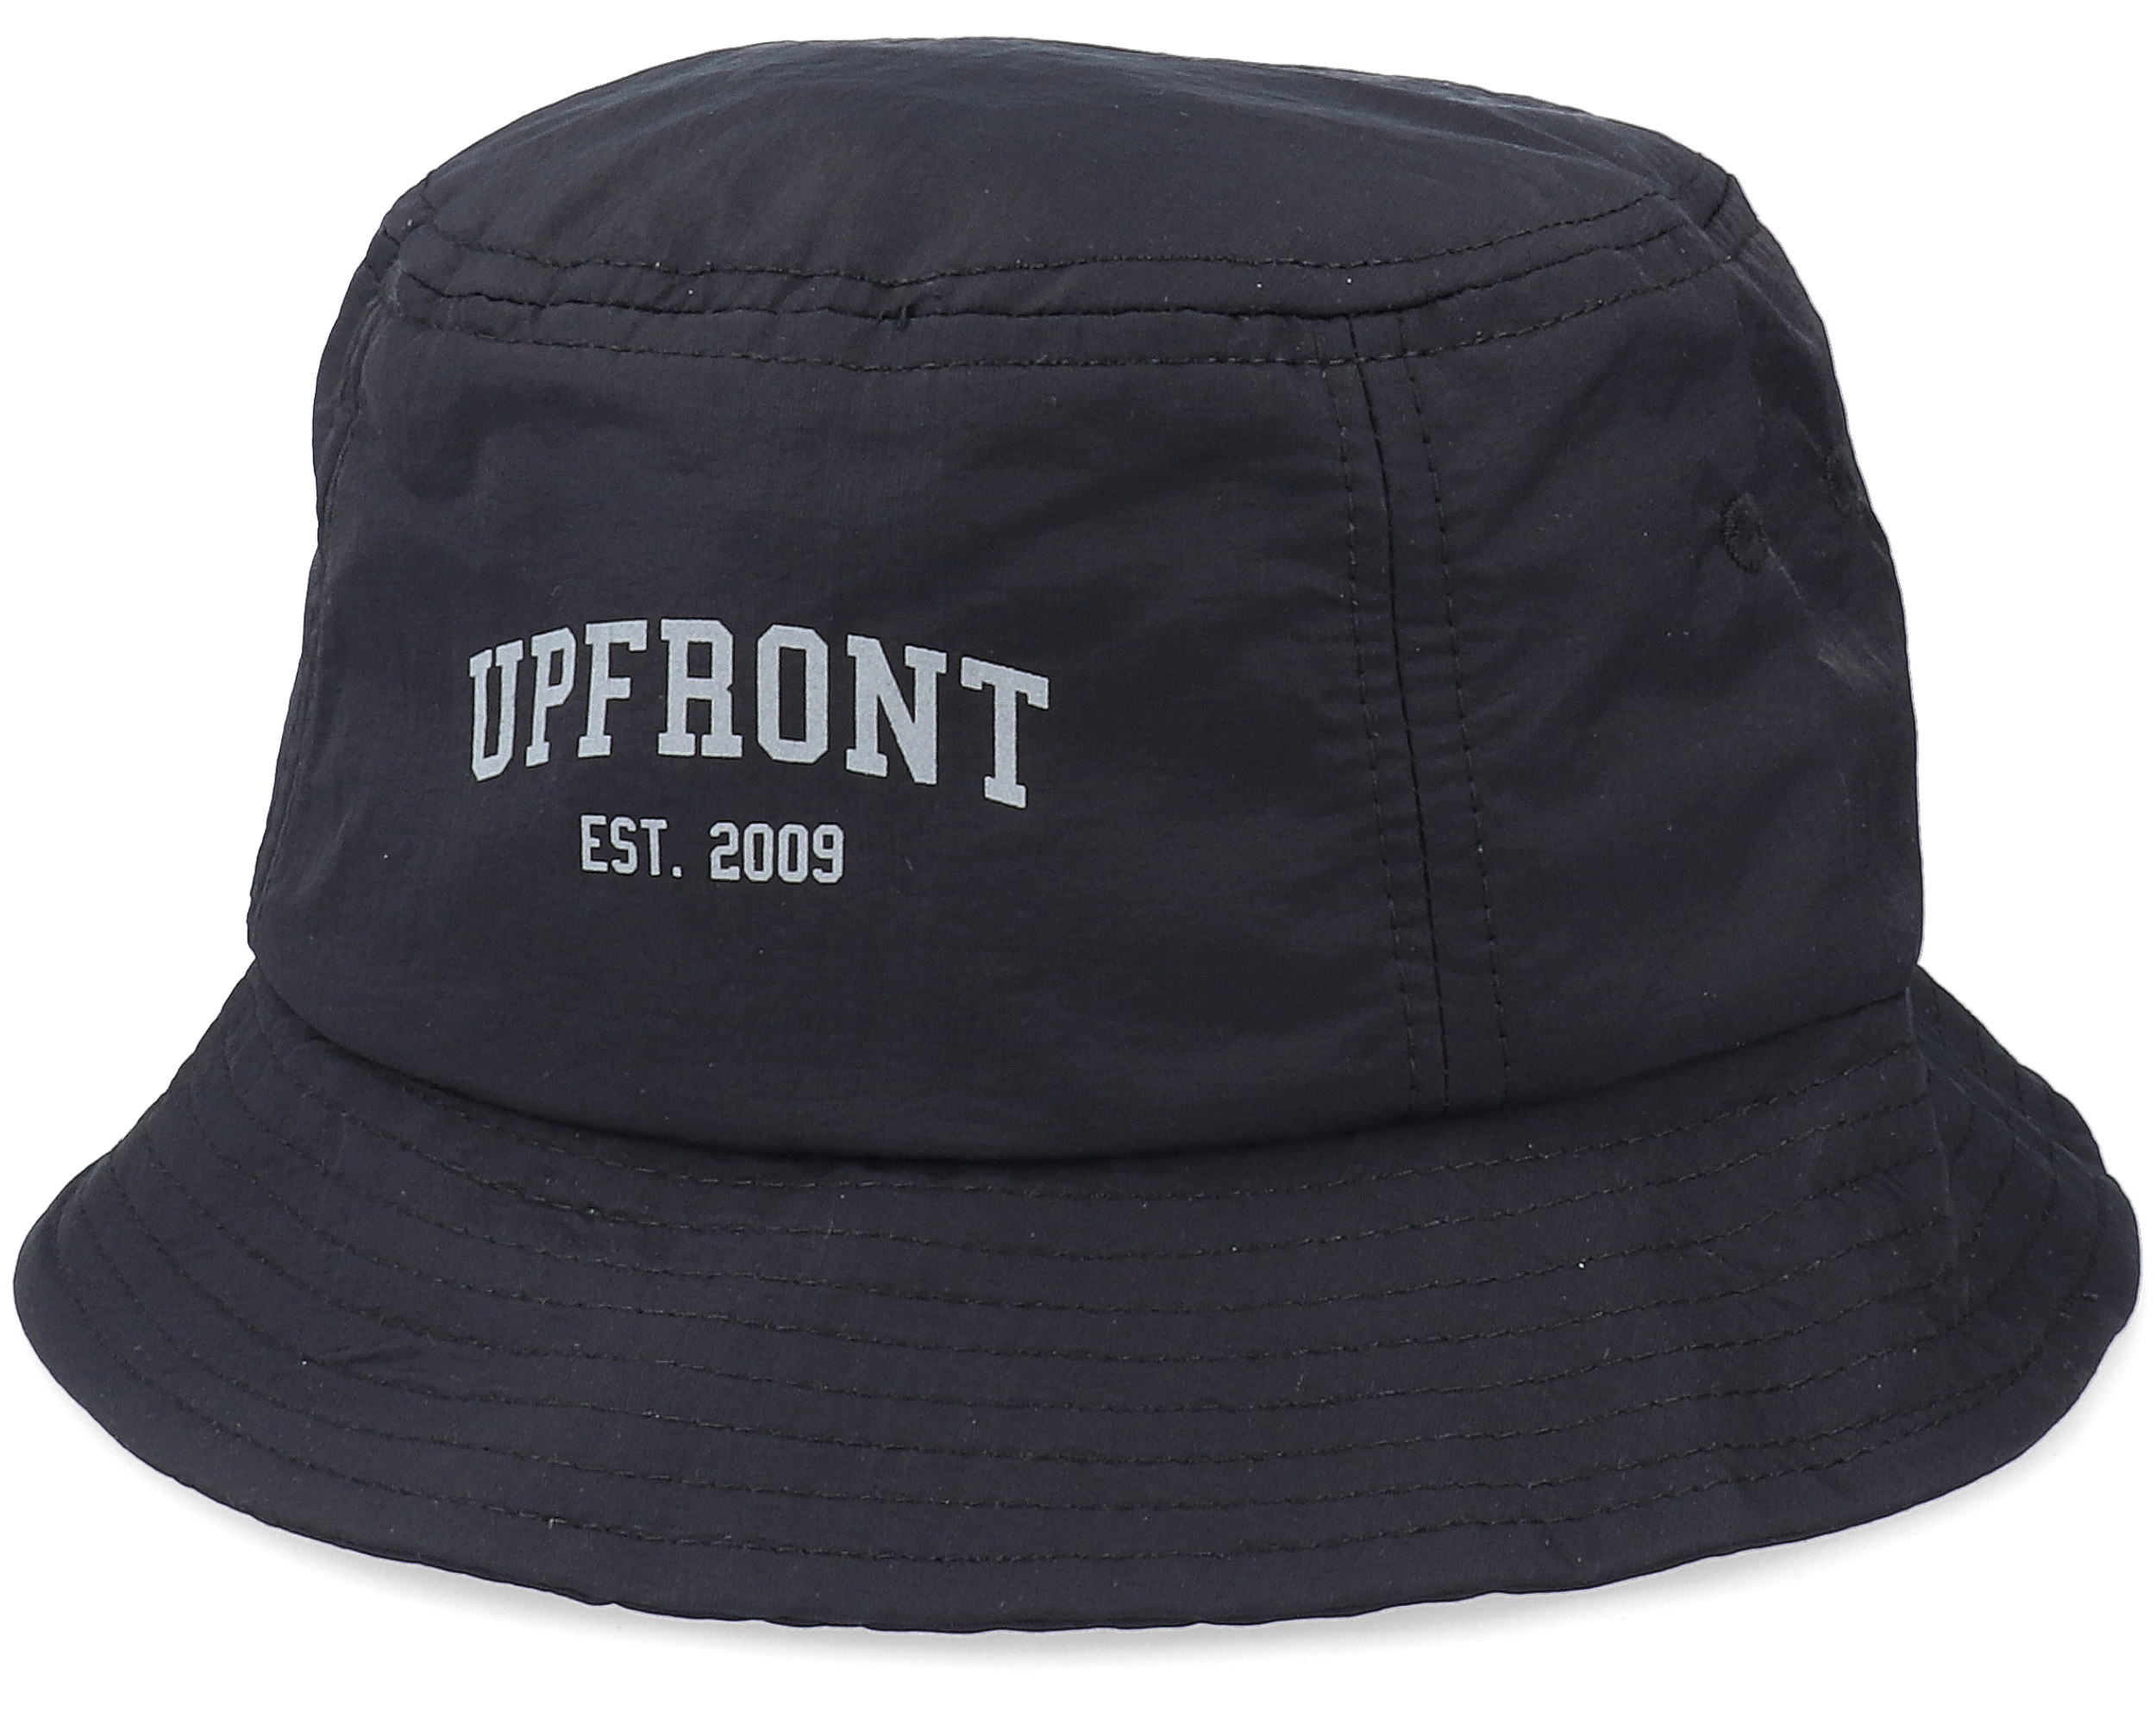 High Reflex Hat Black Bucket - Upfront hat | Hatstore.co.uk